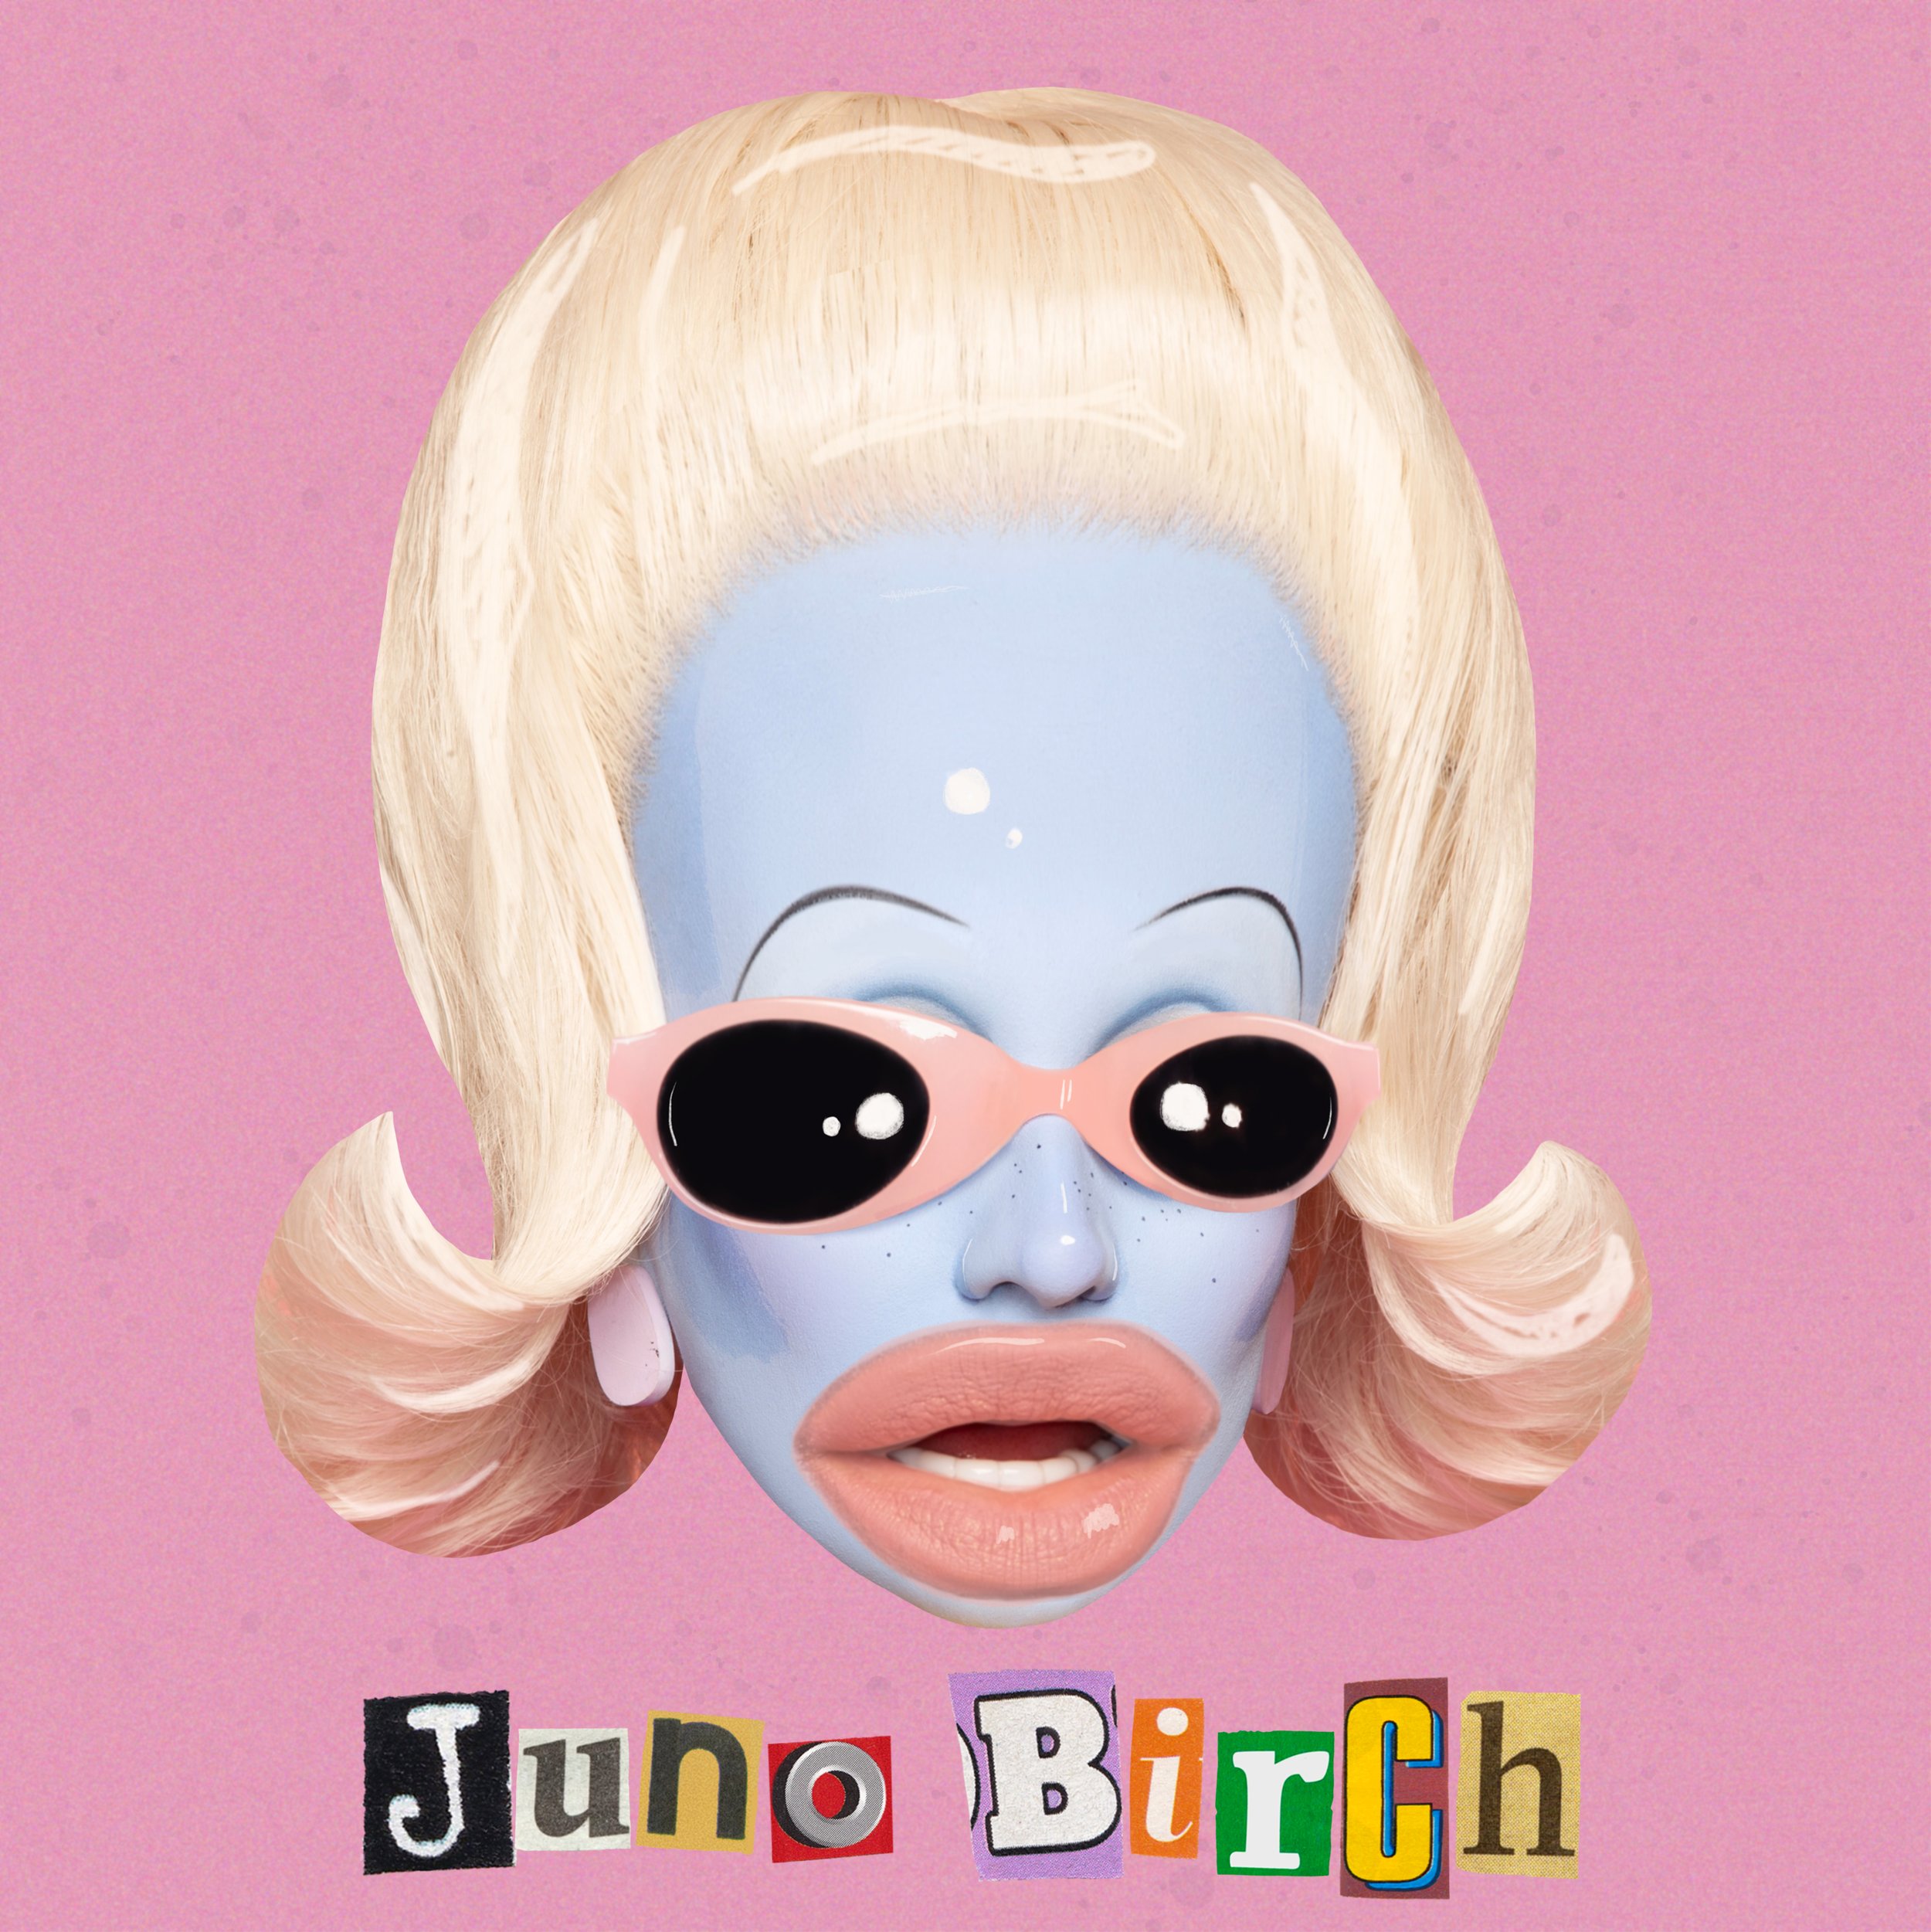 Juno Birch - Drag Queen Merch